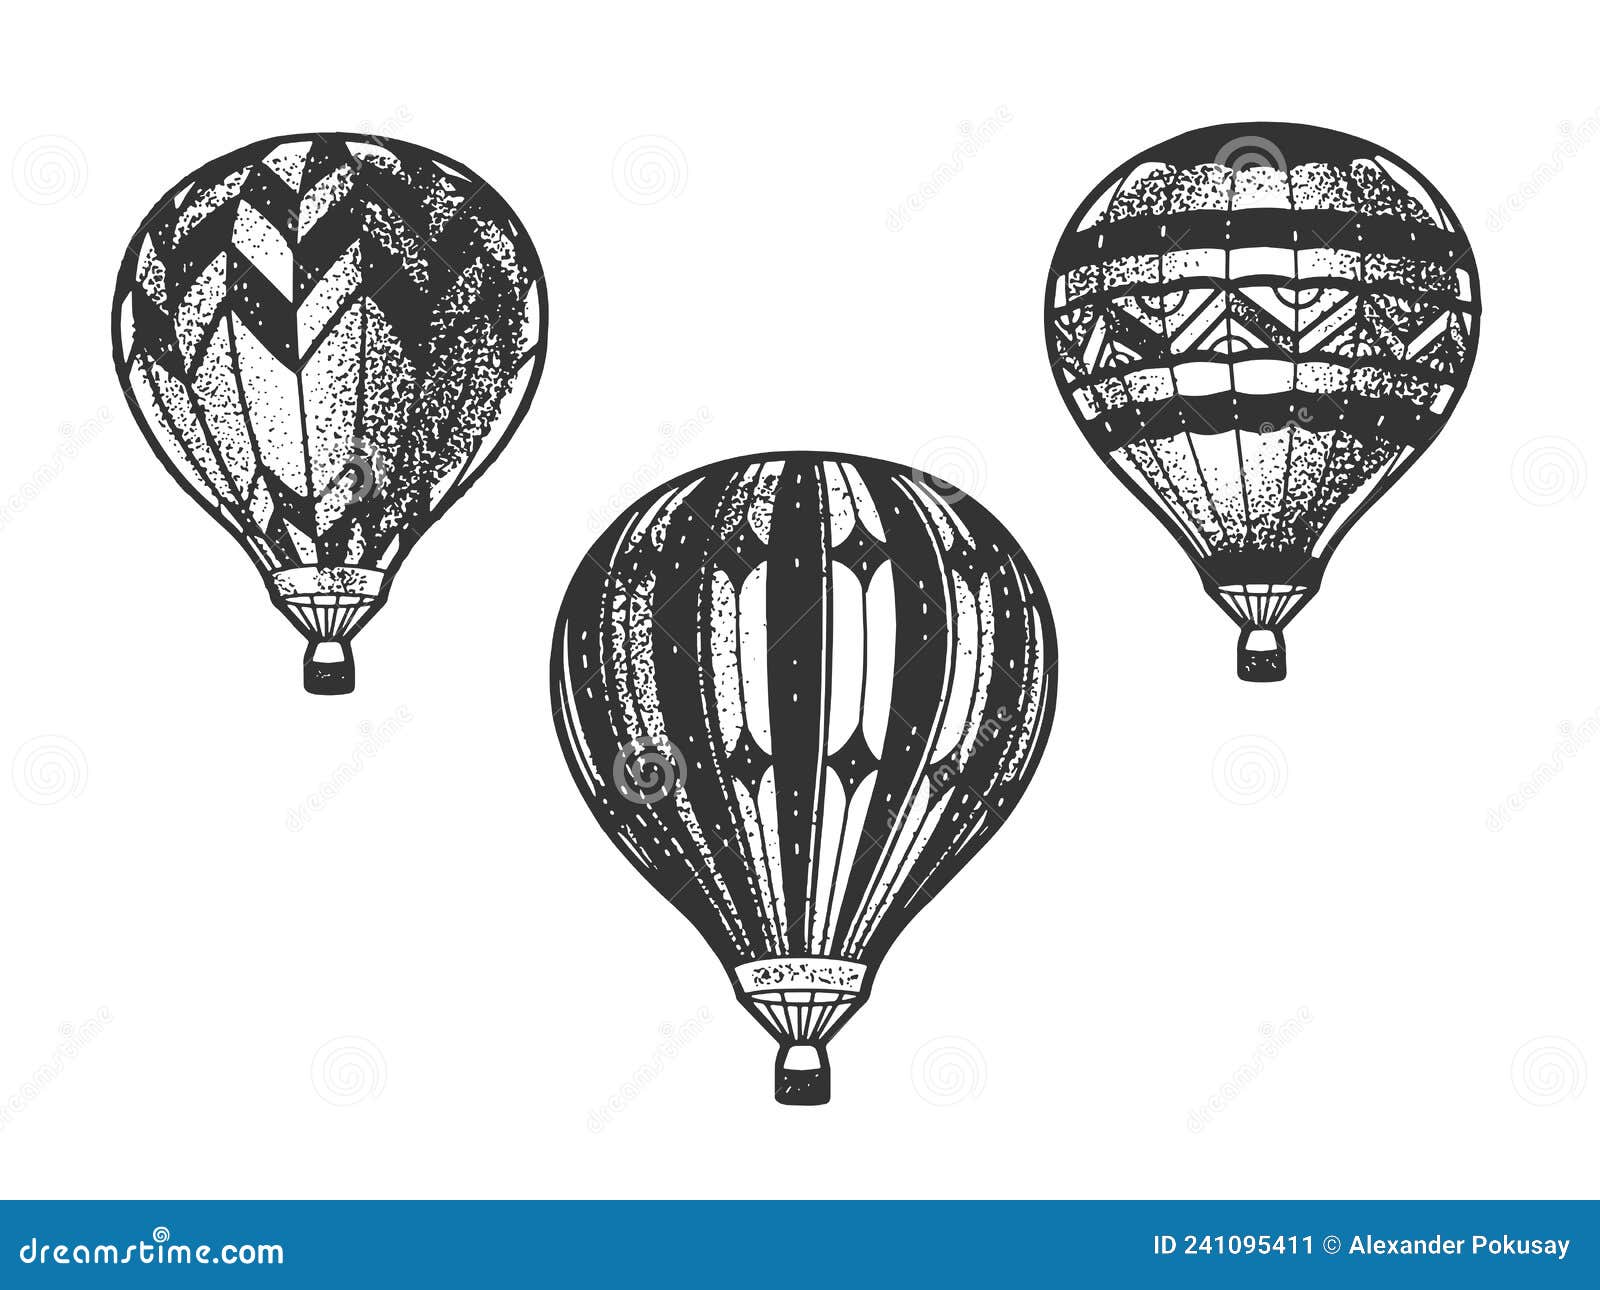 balloon aeronautics aerostat sketch 